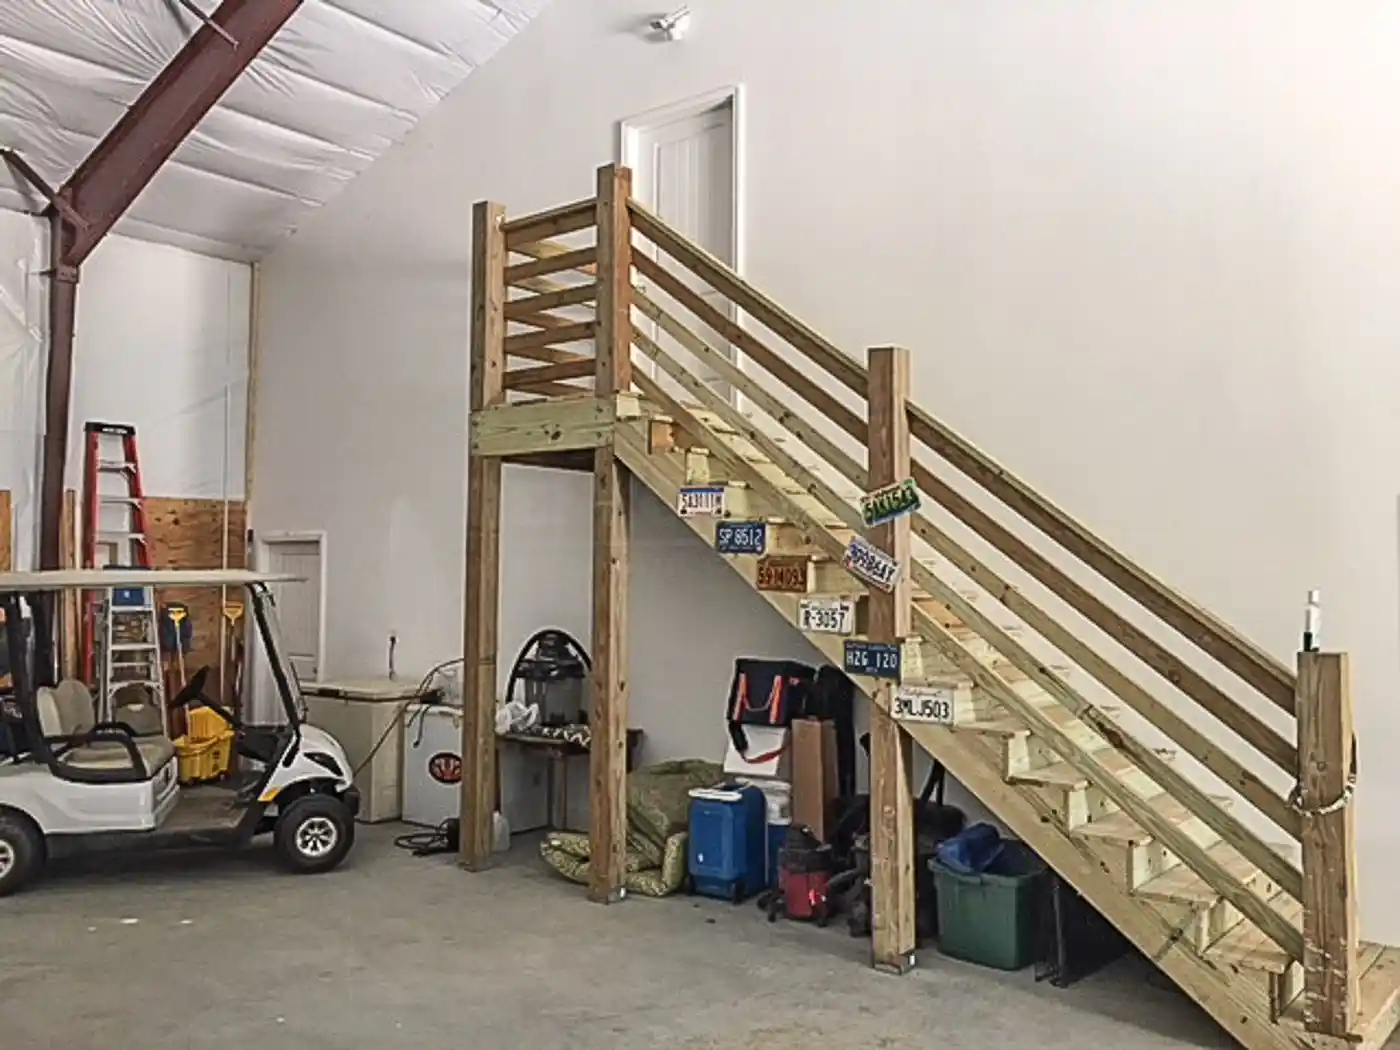 renegade steel building barndominium interior extra stairs